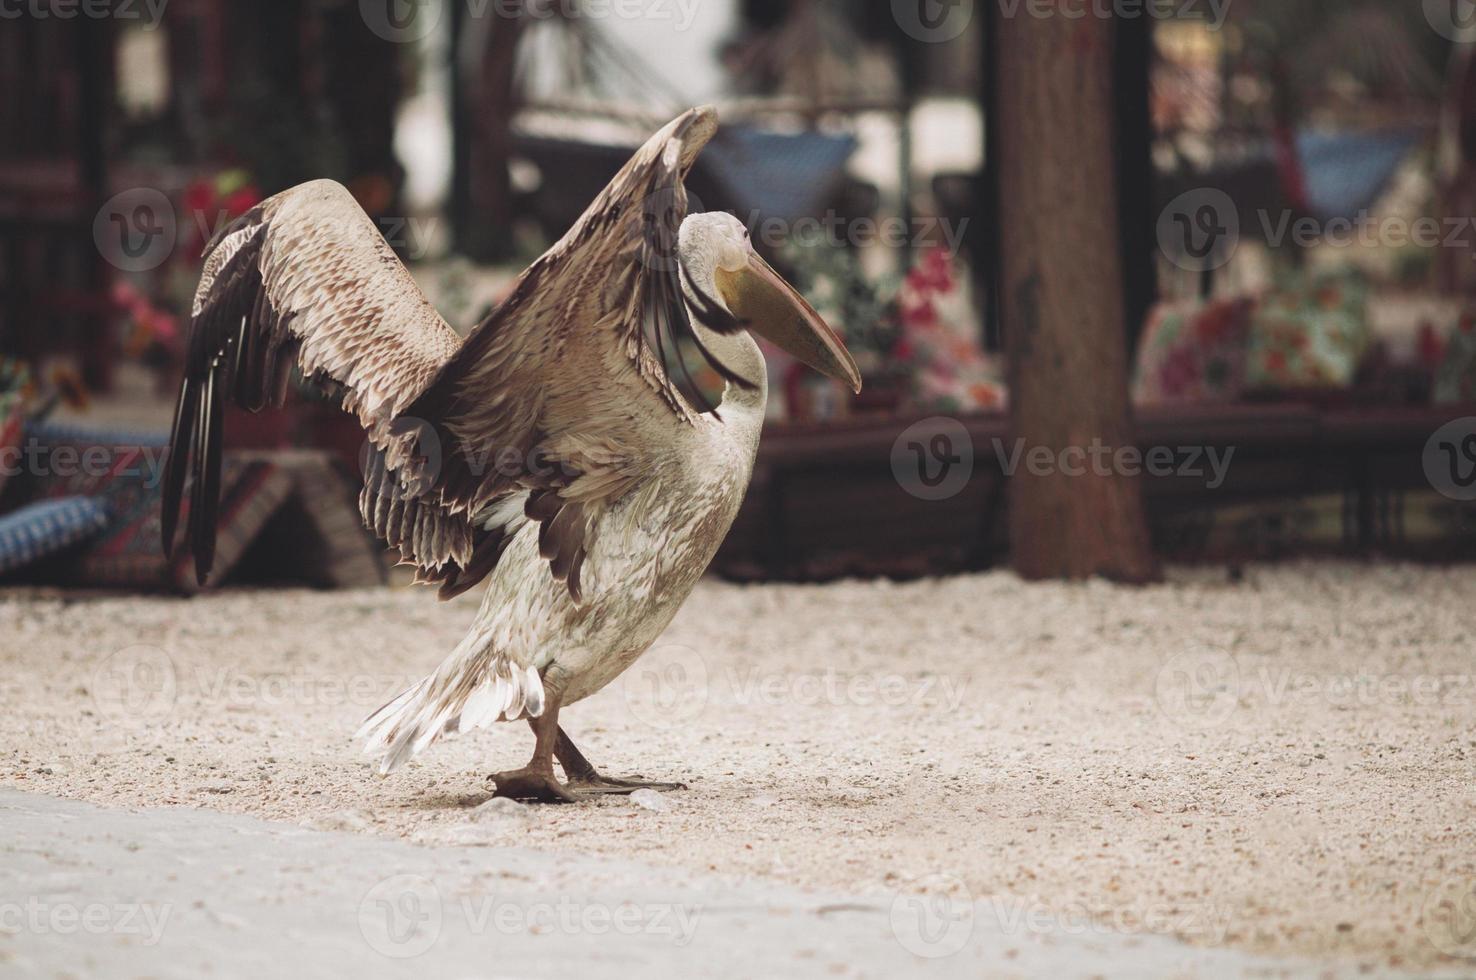 um lindo pelicano em uma rua da cidade desce a rua. foto